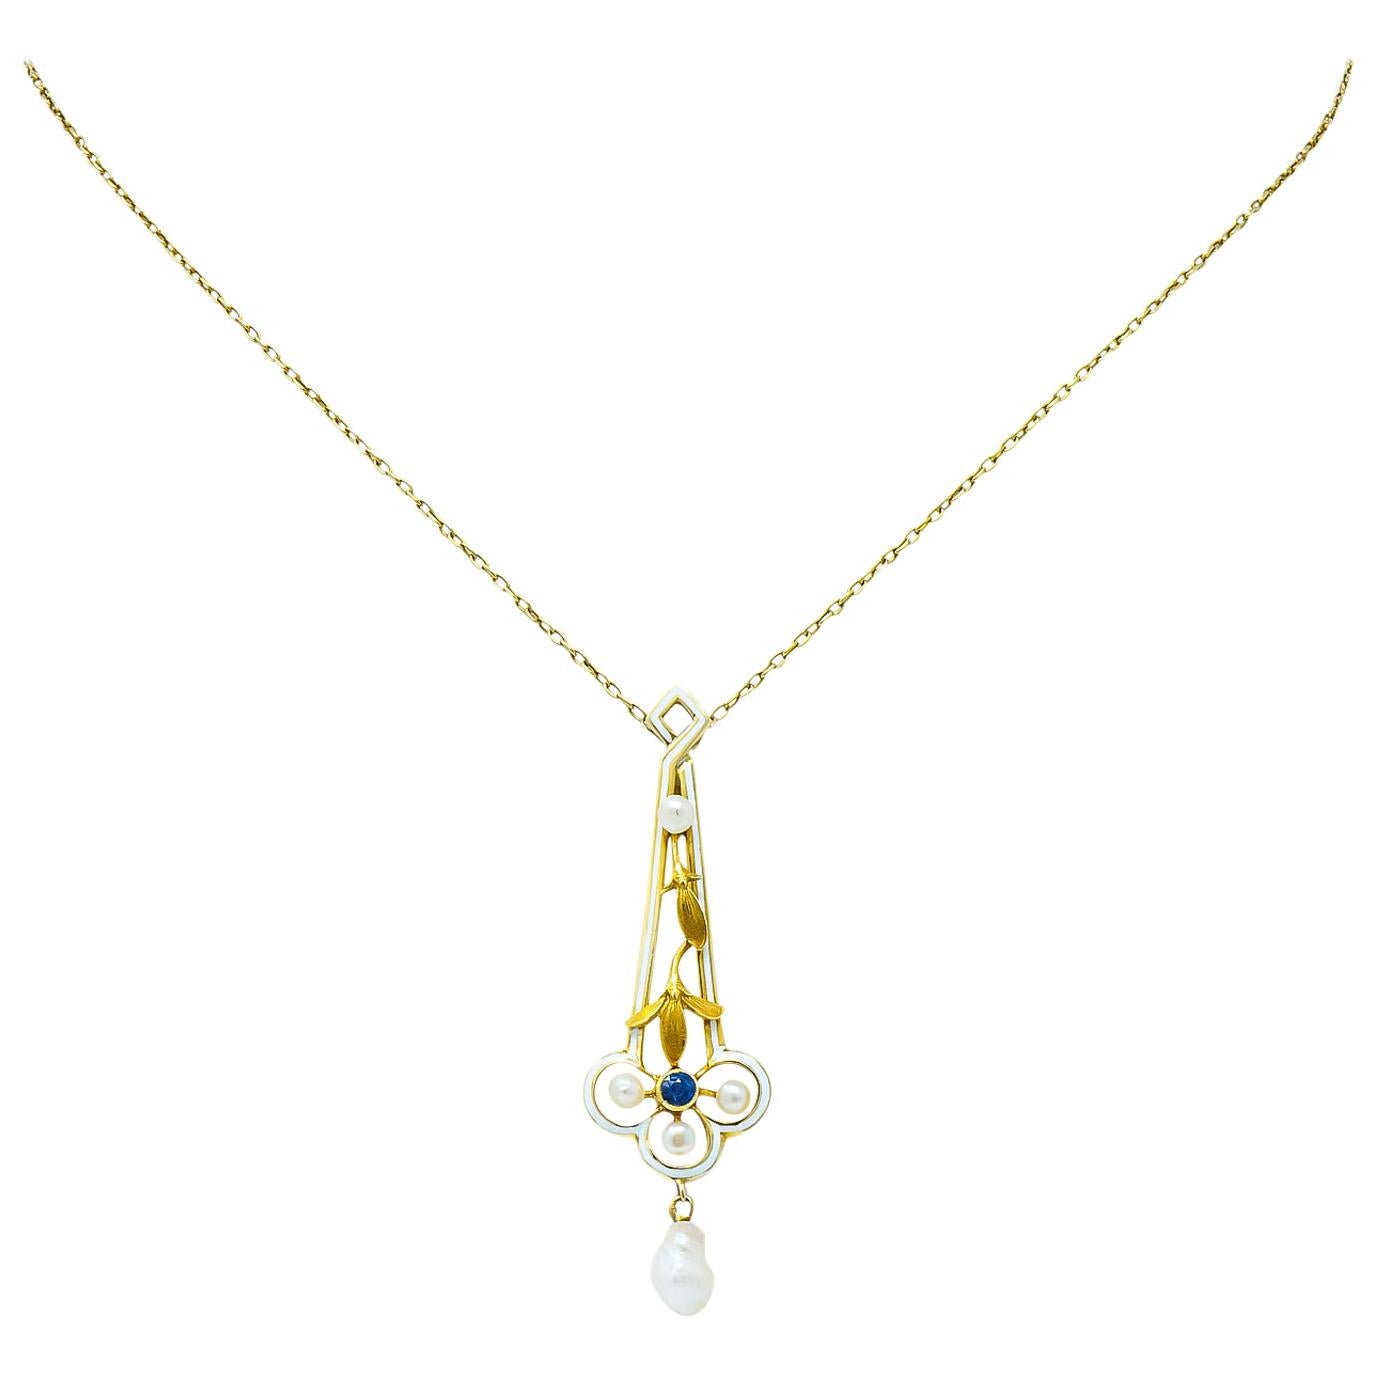 A.J. Hedges & Co. 1905 Art Nouveau Enamel Sapphire Pearl 14 Karat Gold Necklace